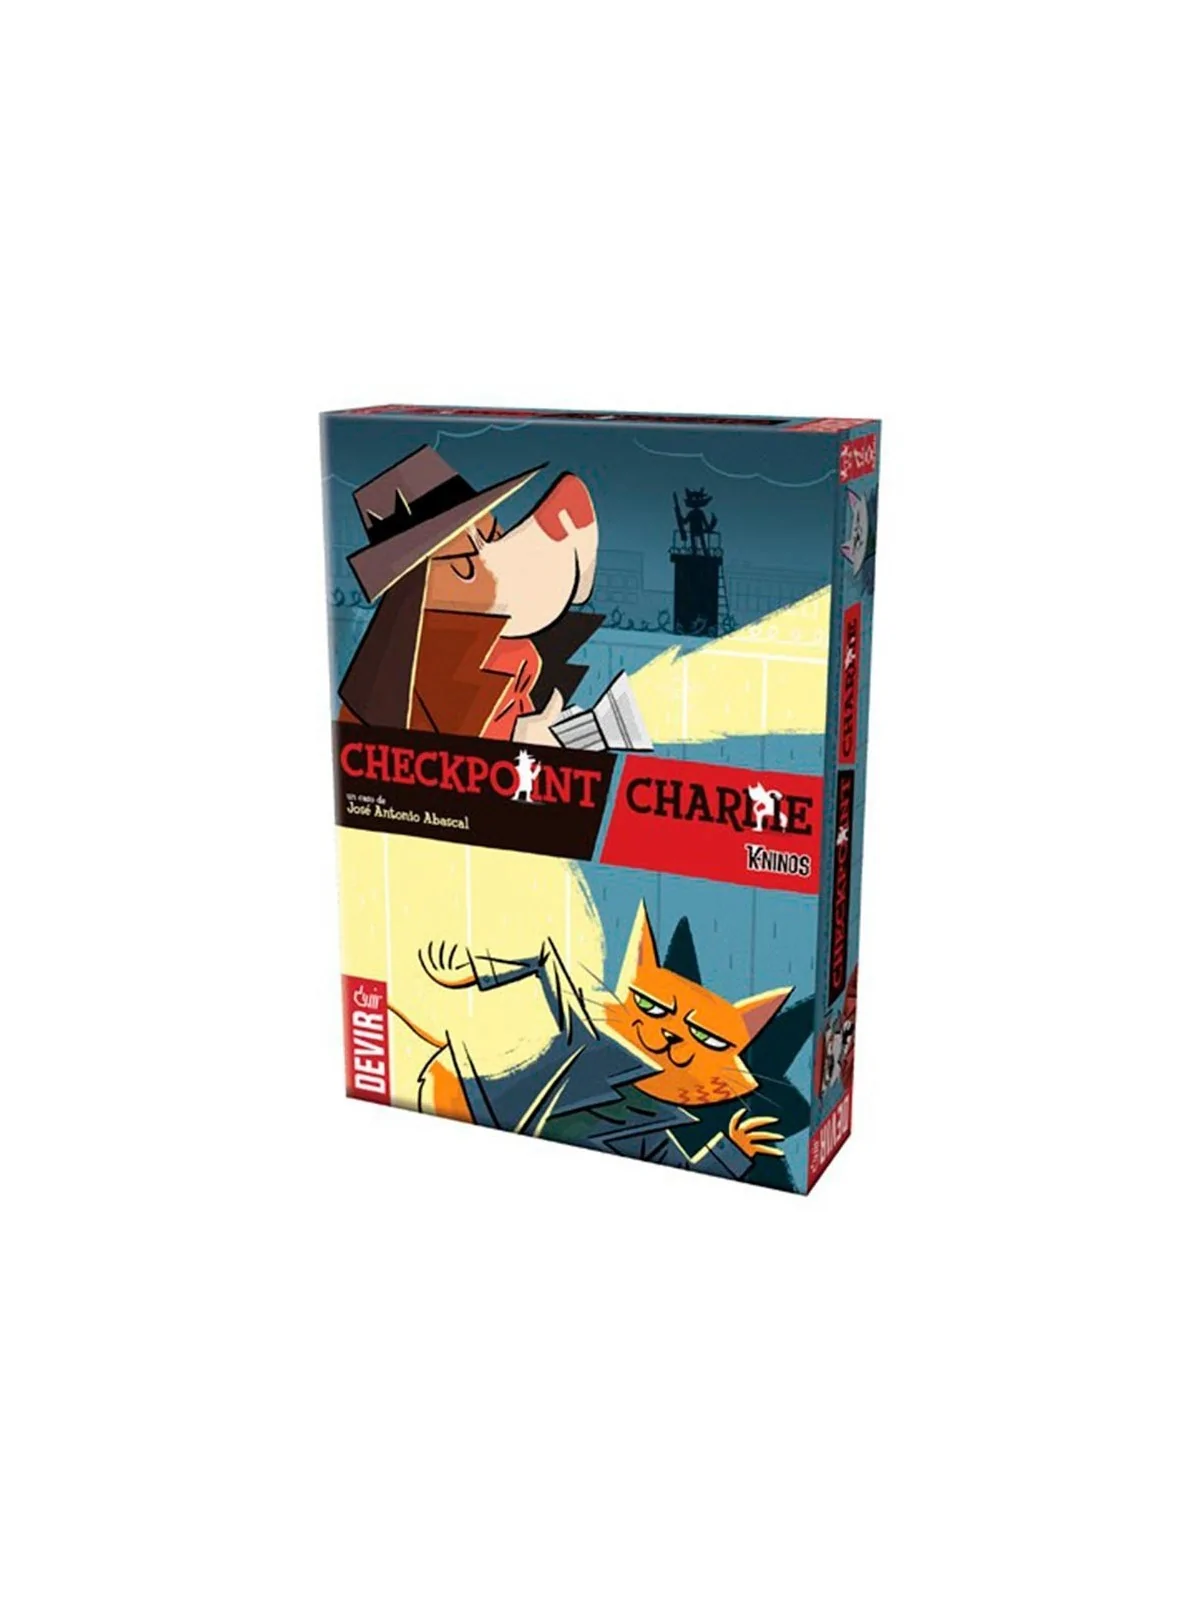 Comprar Checkpoint Charlie barato al mejor precio 13,50 € de Devir